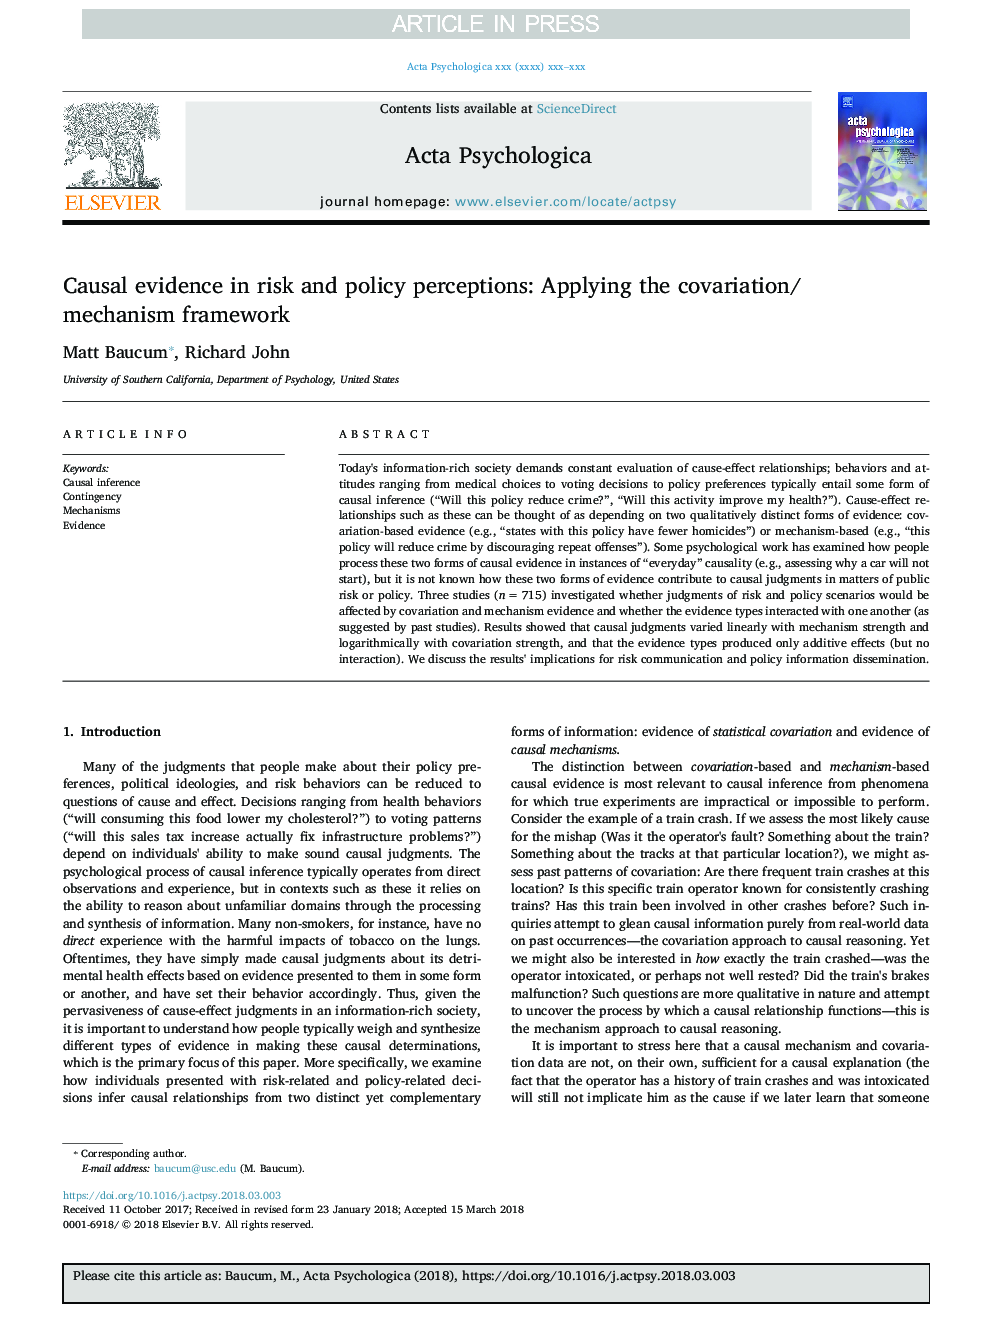 شواهد علمی در درک ریسک و سیاست: استفاده از چارچوب متغیر / سازوکار 